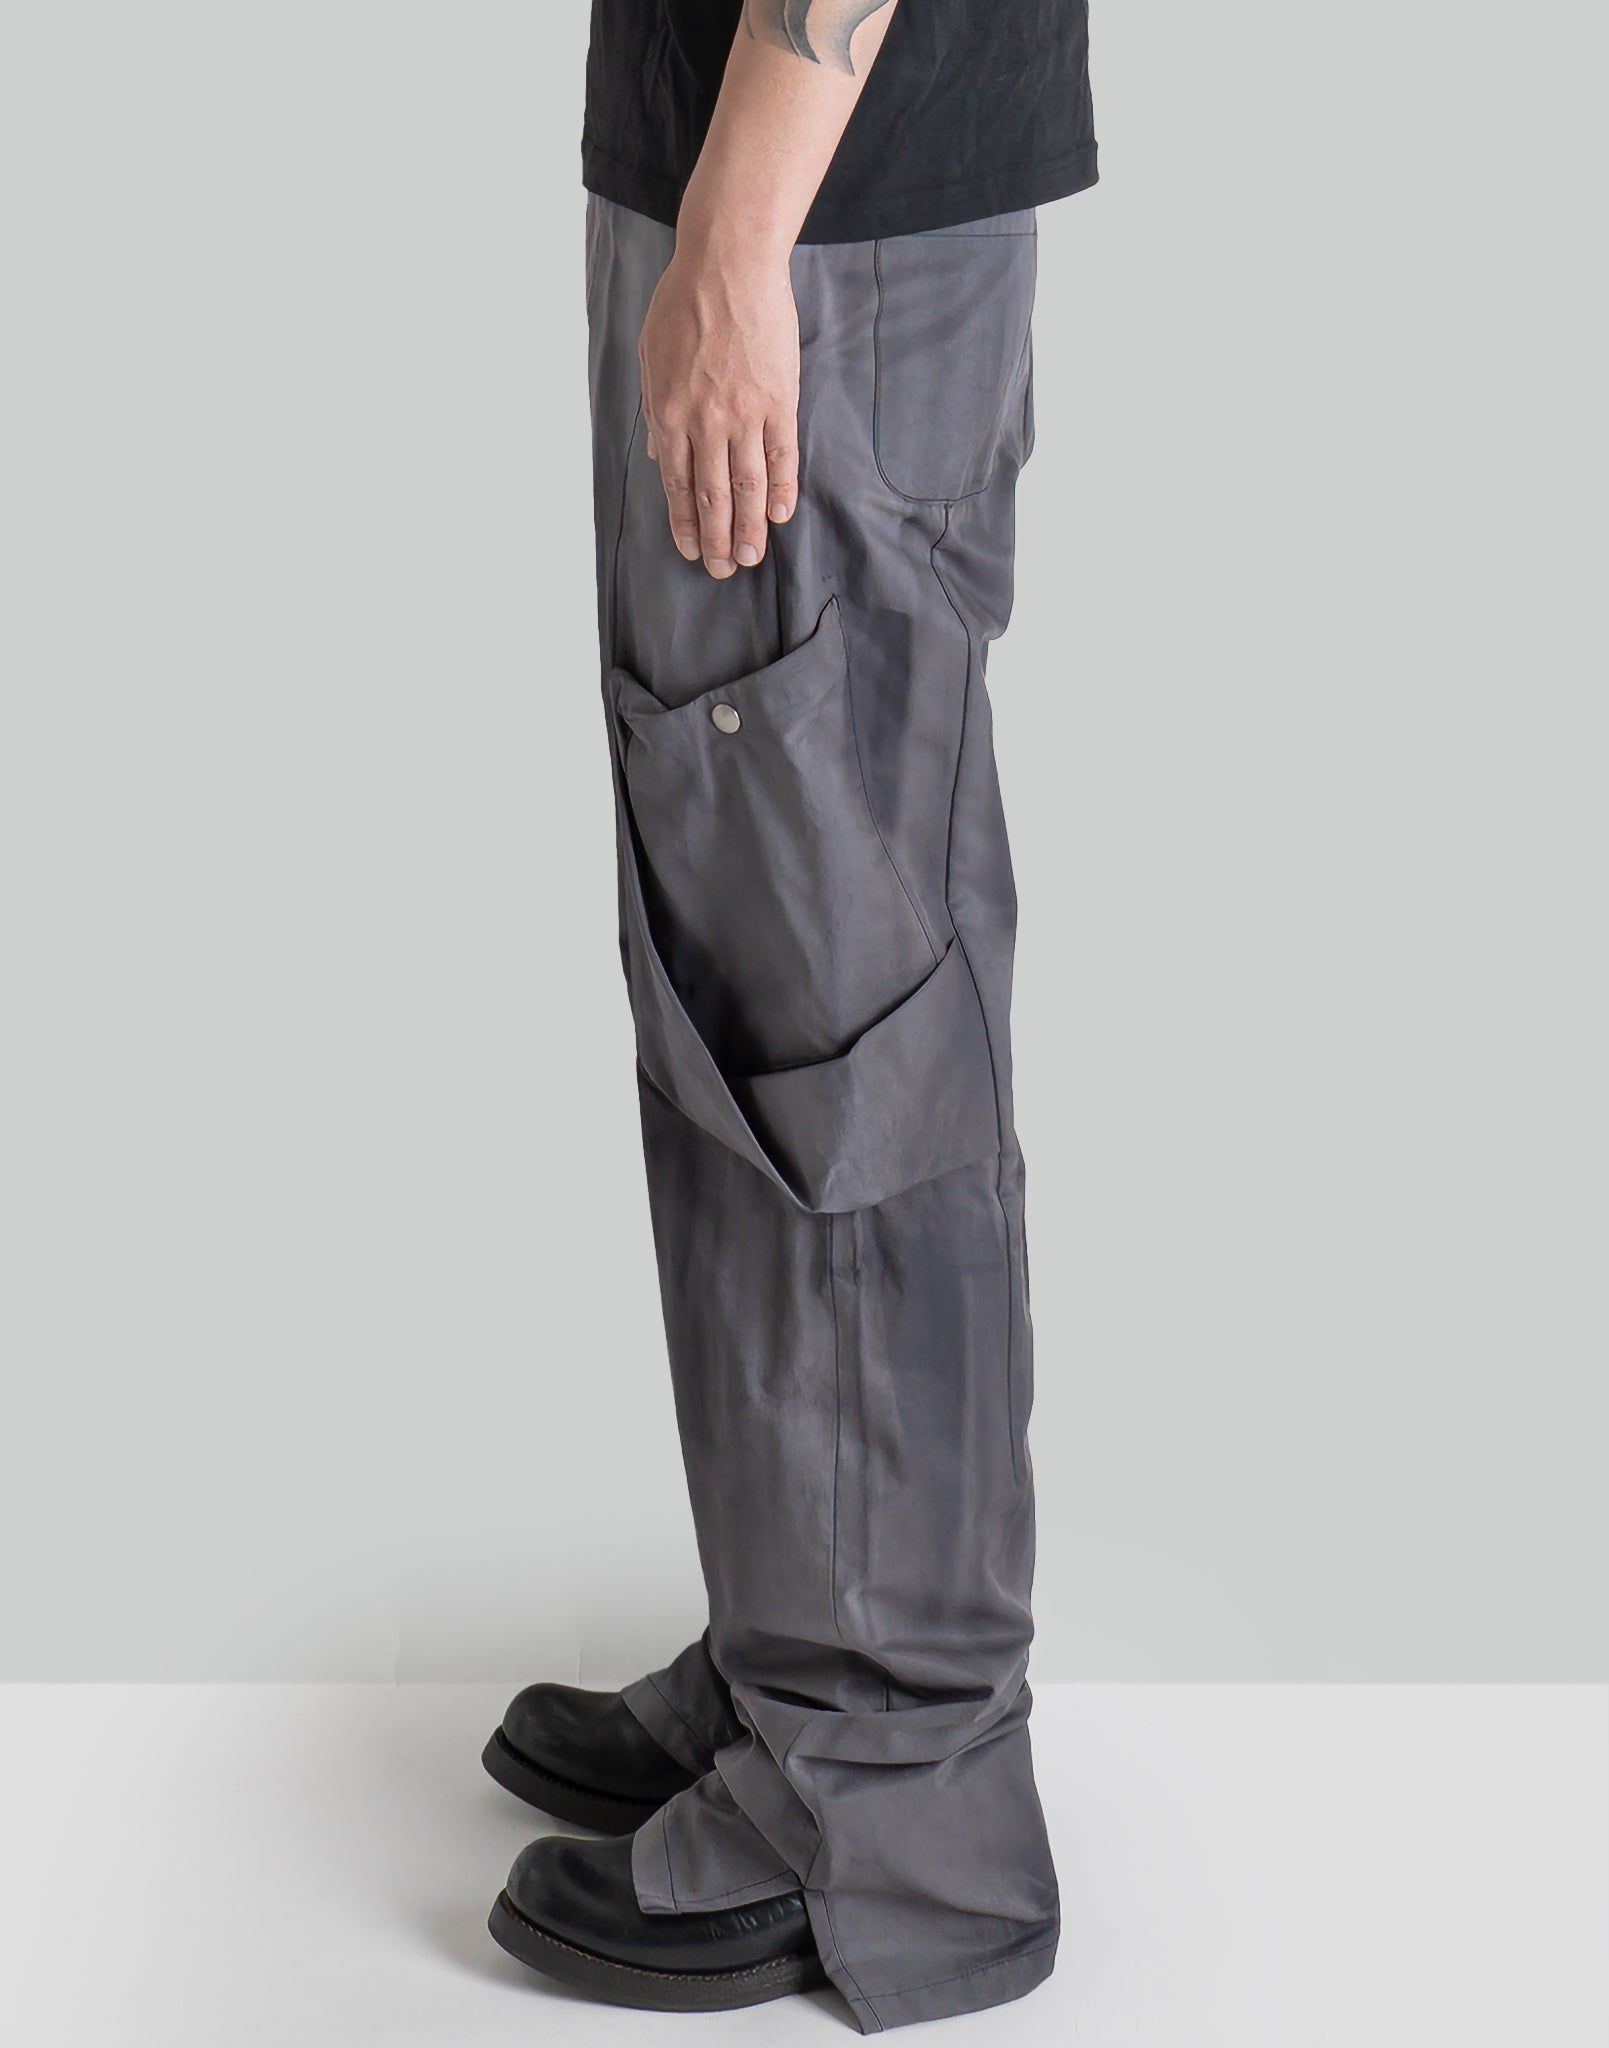 17,600円Jiyongkim Sun-Bleached Trousers カーゴパンツ